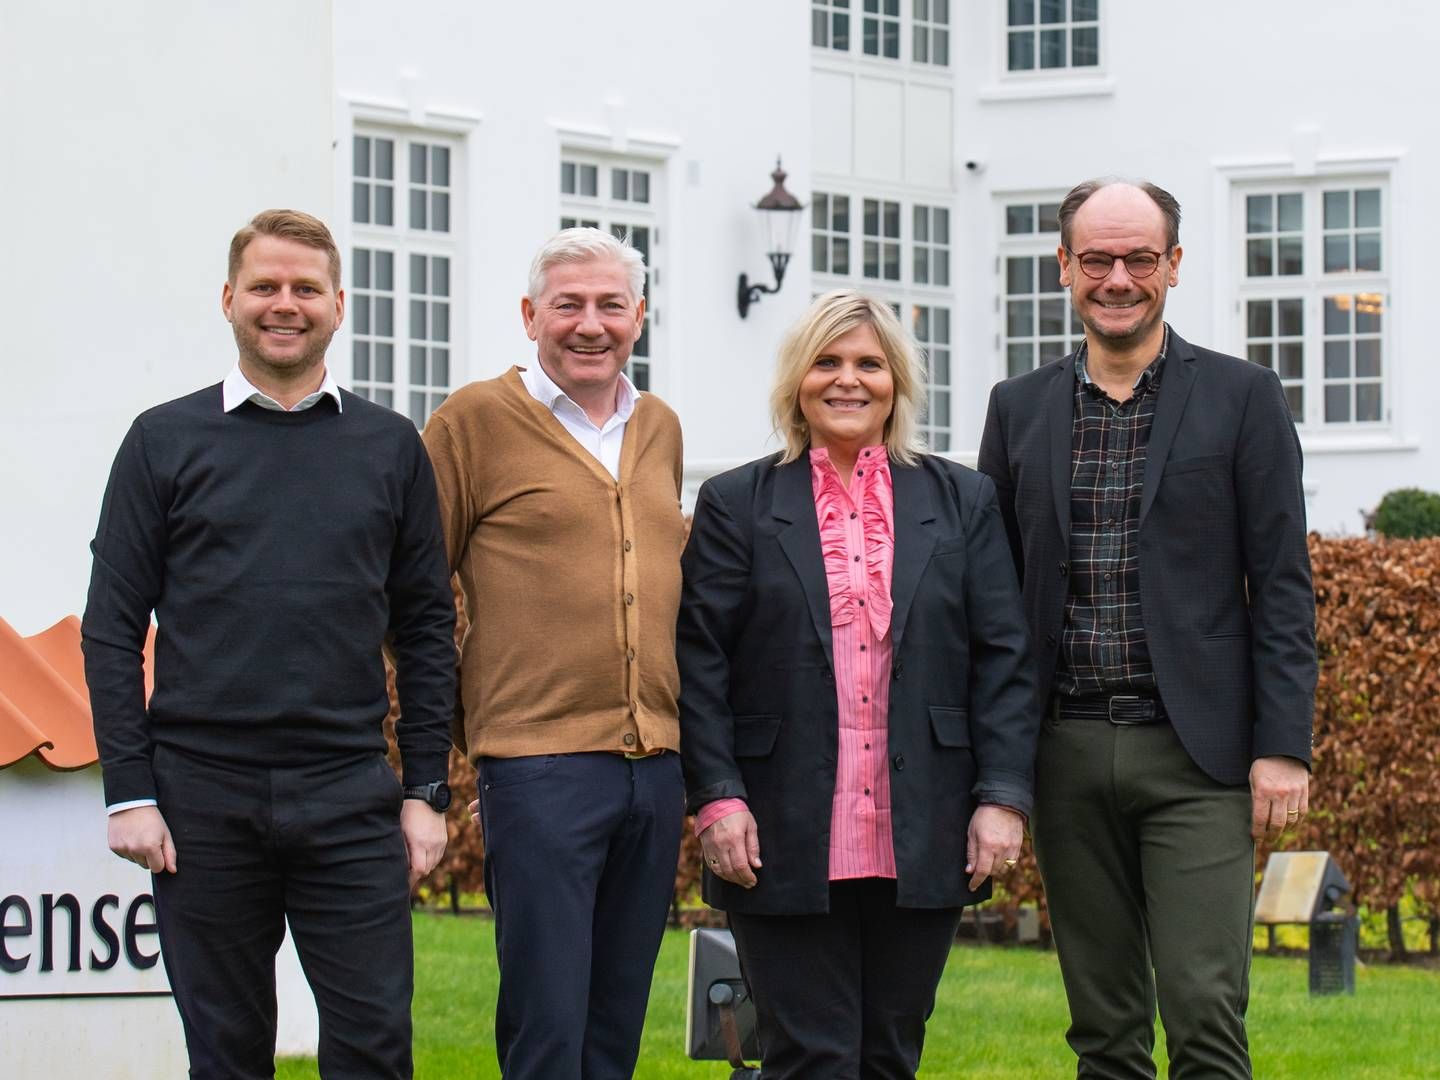 Ejerkredsen i Thorkild Kristensen. Fra venstre: Martin Lindhøj, Allan Nørgaard, Jette Gudiksen og Frank Andersen. | Foto: PR / Thorkild Kristensen